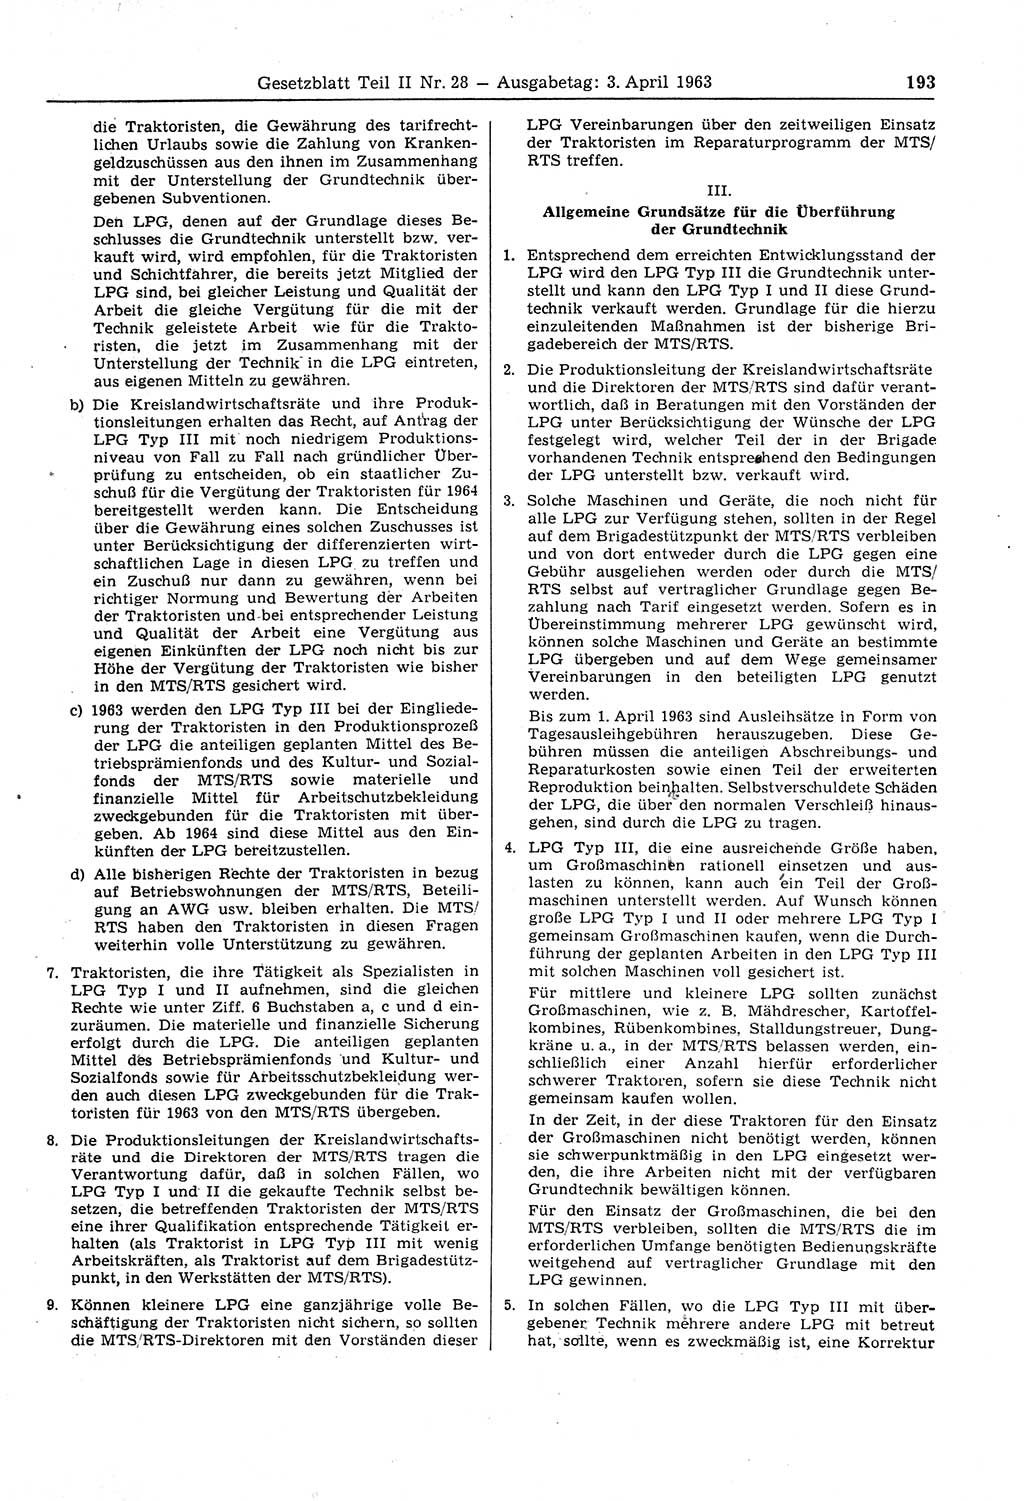 Gesetzblatt (GBl.) der Deutschen Demokratischen Republik (DDR) Teil ⅠⅠ 1963, Seite 193 (GBl. DDR ⅠⅠ 1963, S. 193)